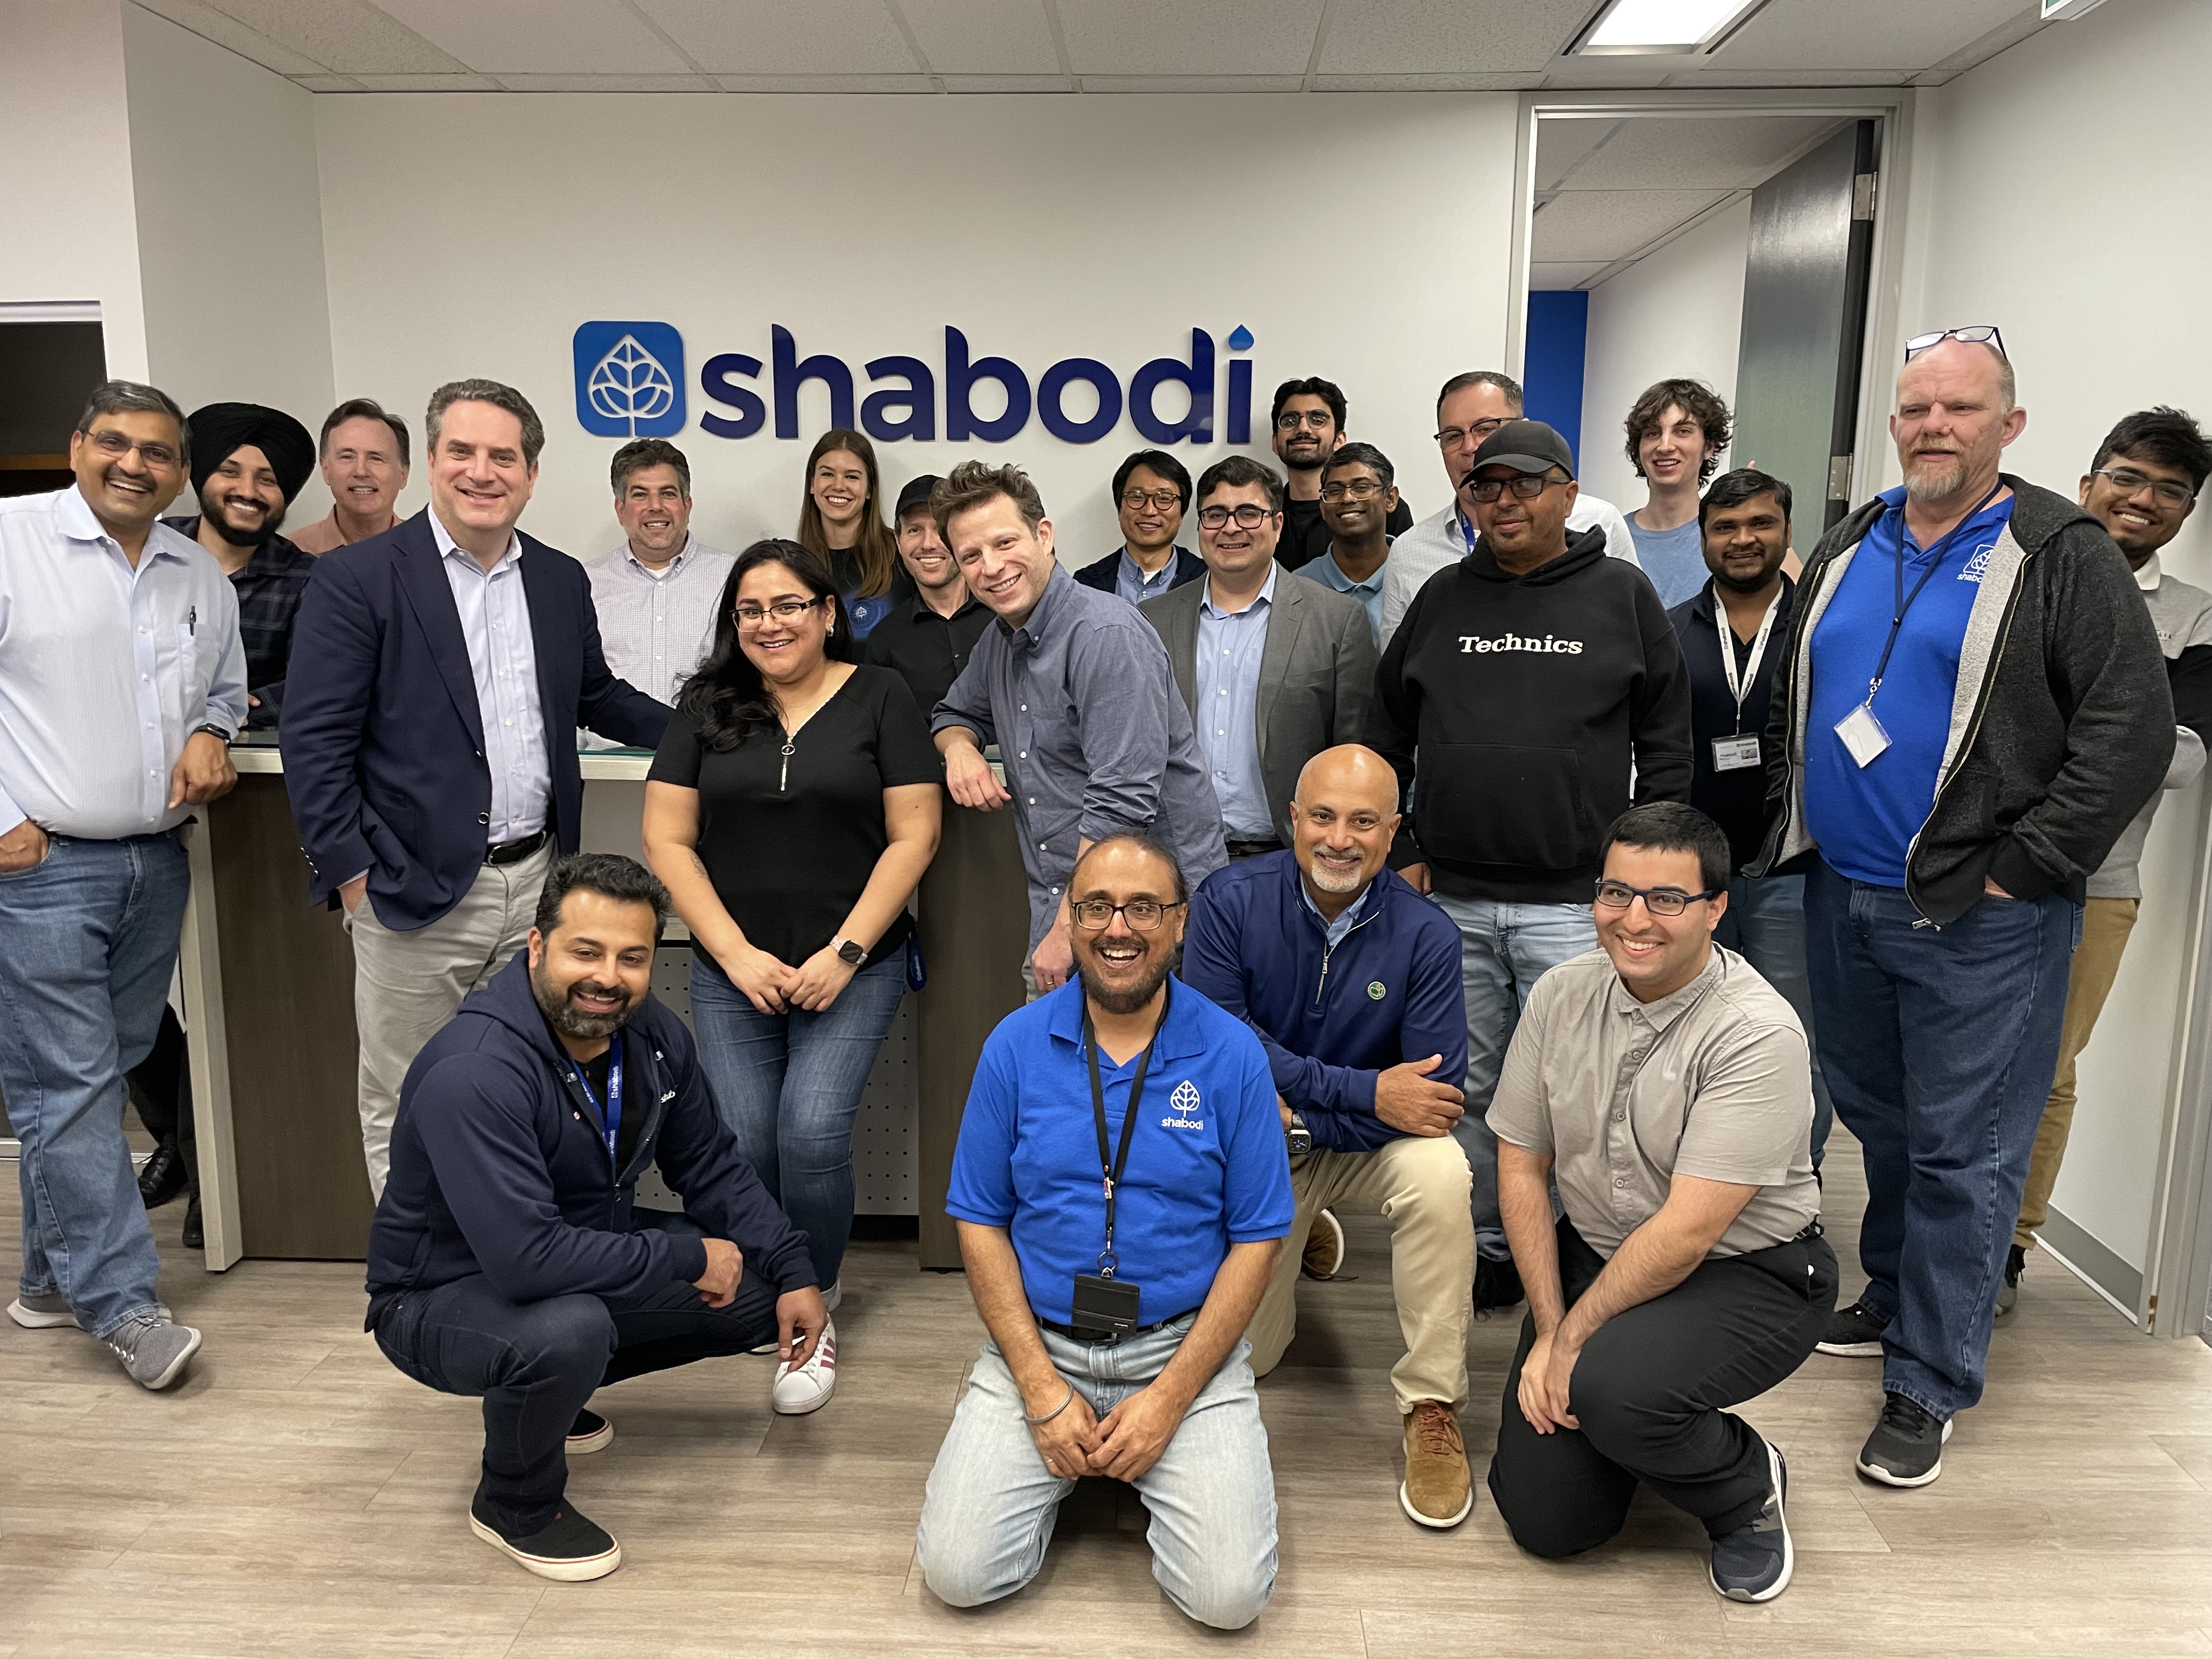 Shabodi Team Image